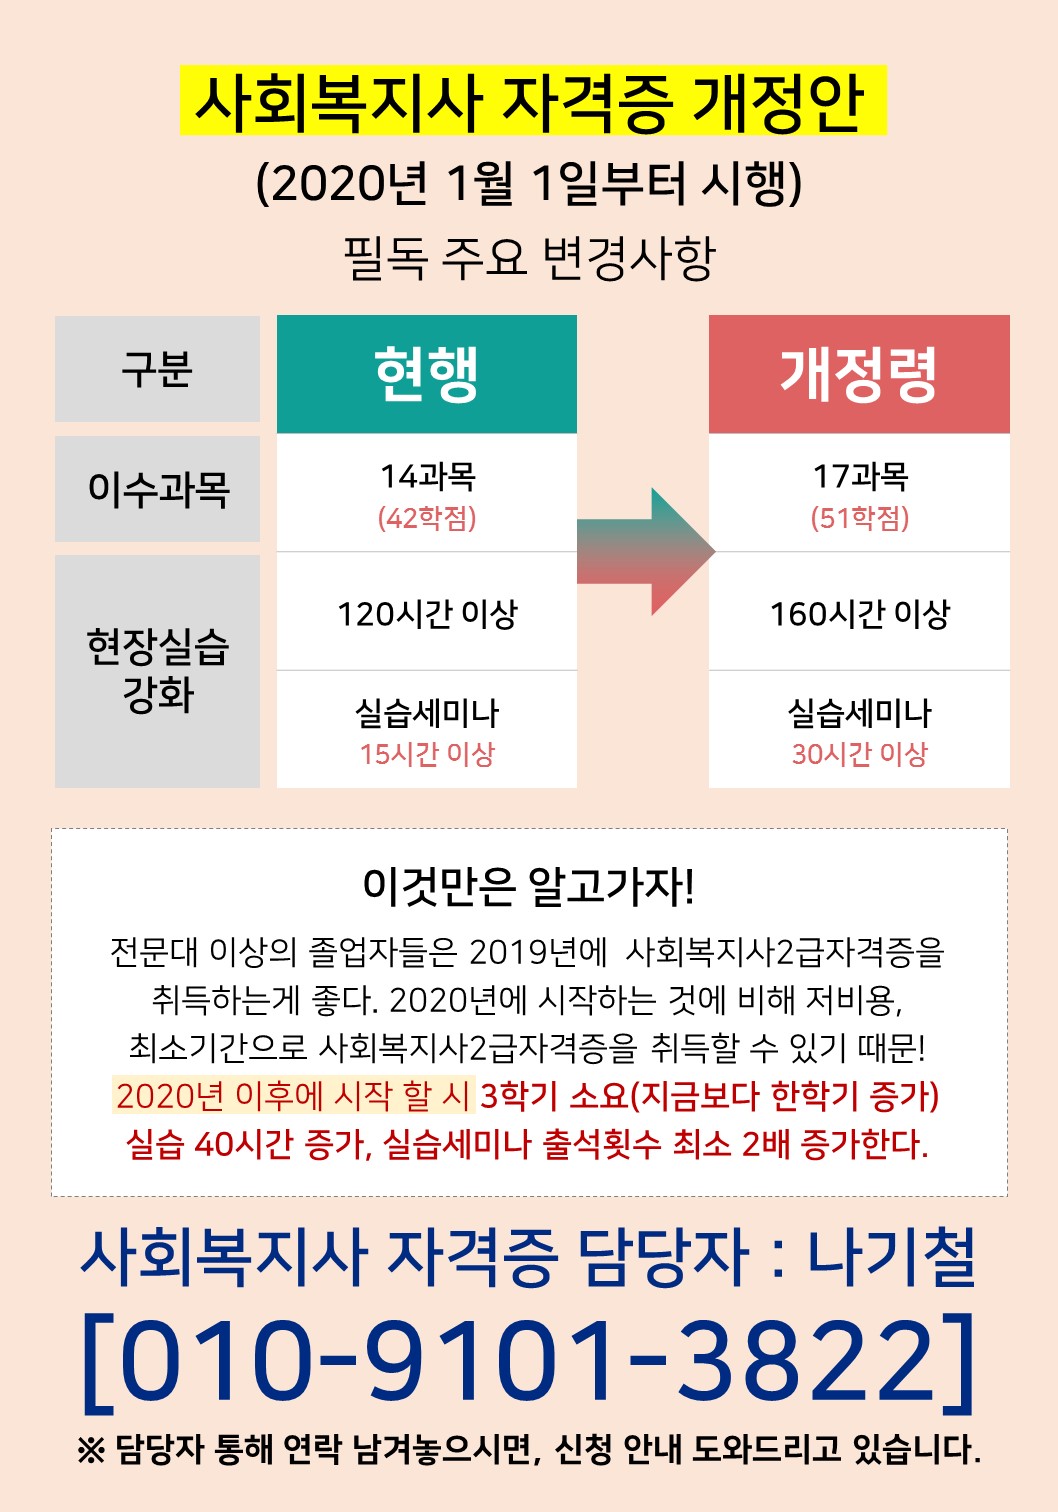 ▶2020년도 사회복지사 2급 취득법 개정 예정◀ 사진